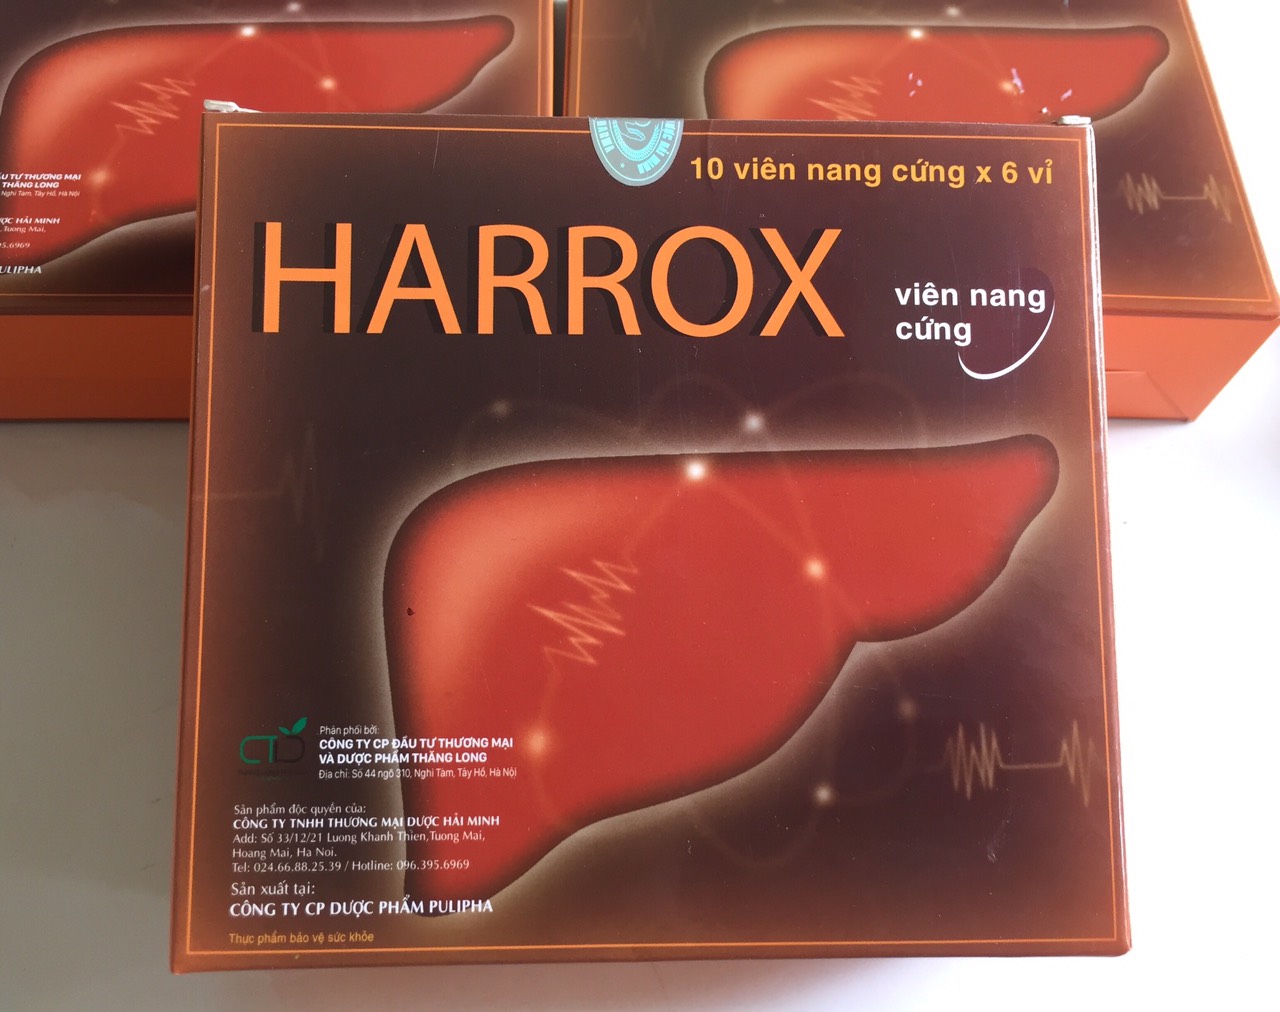 HARROX hộp 60 viên giúp tăng cường chức năng gan giải độc gan hiệu quả